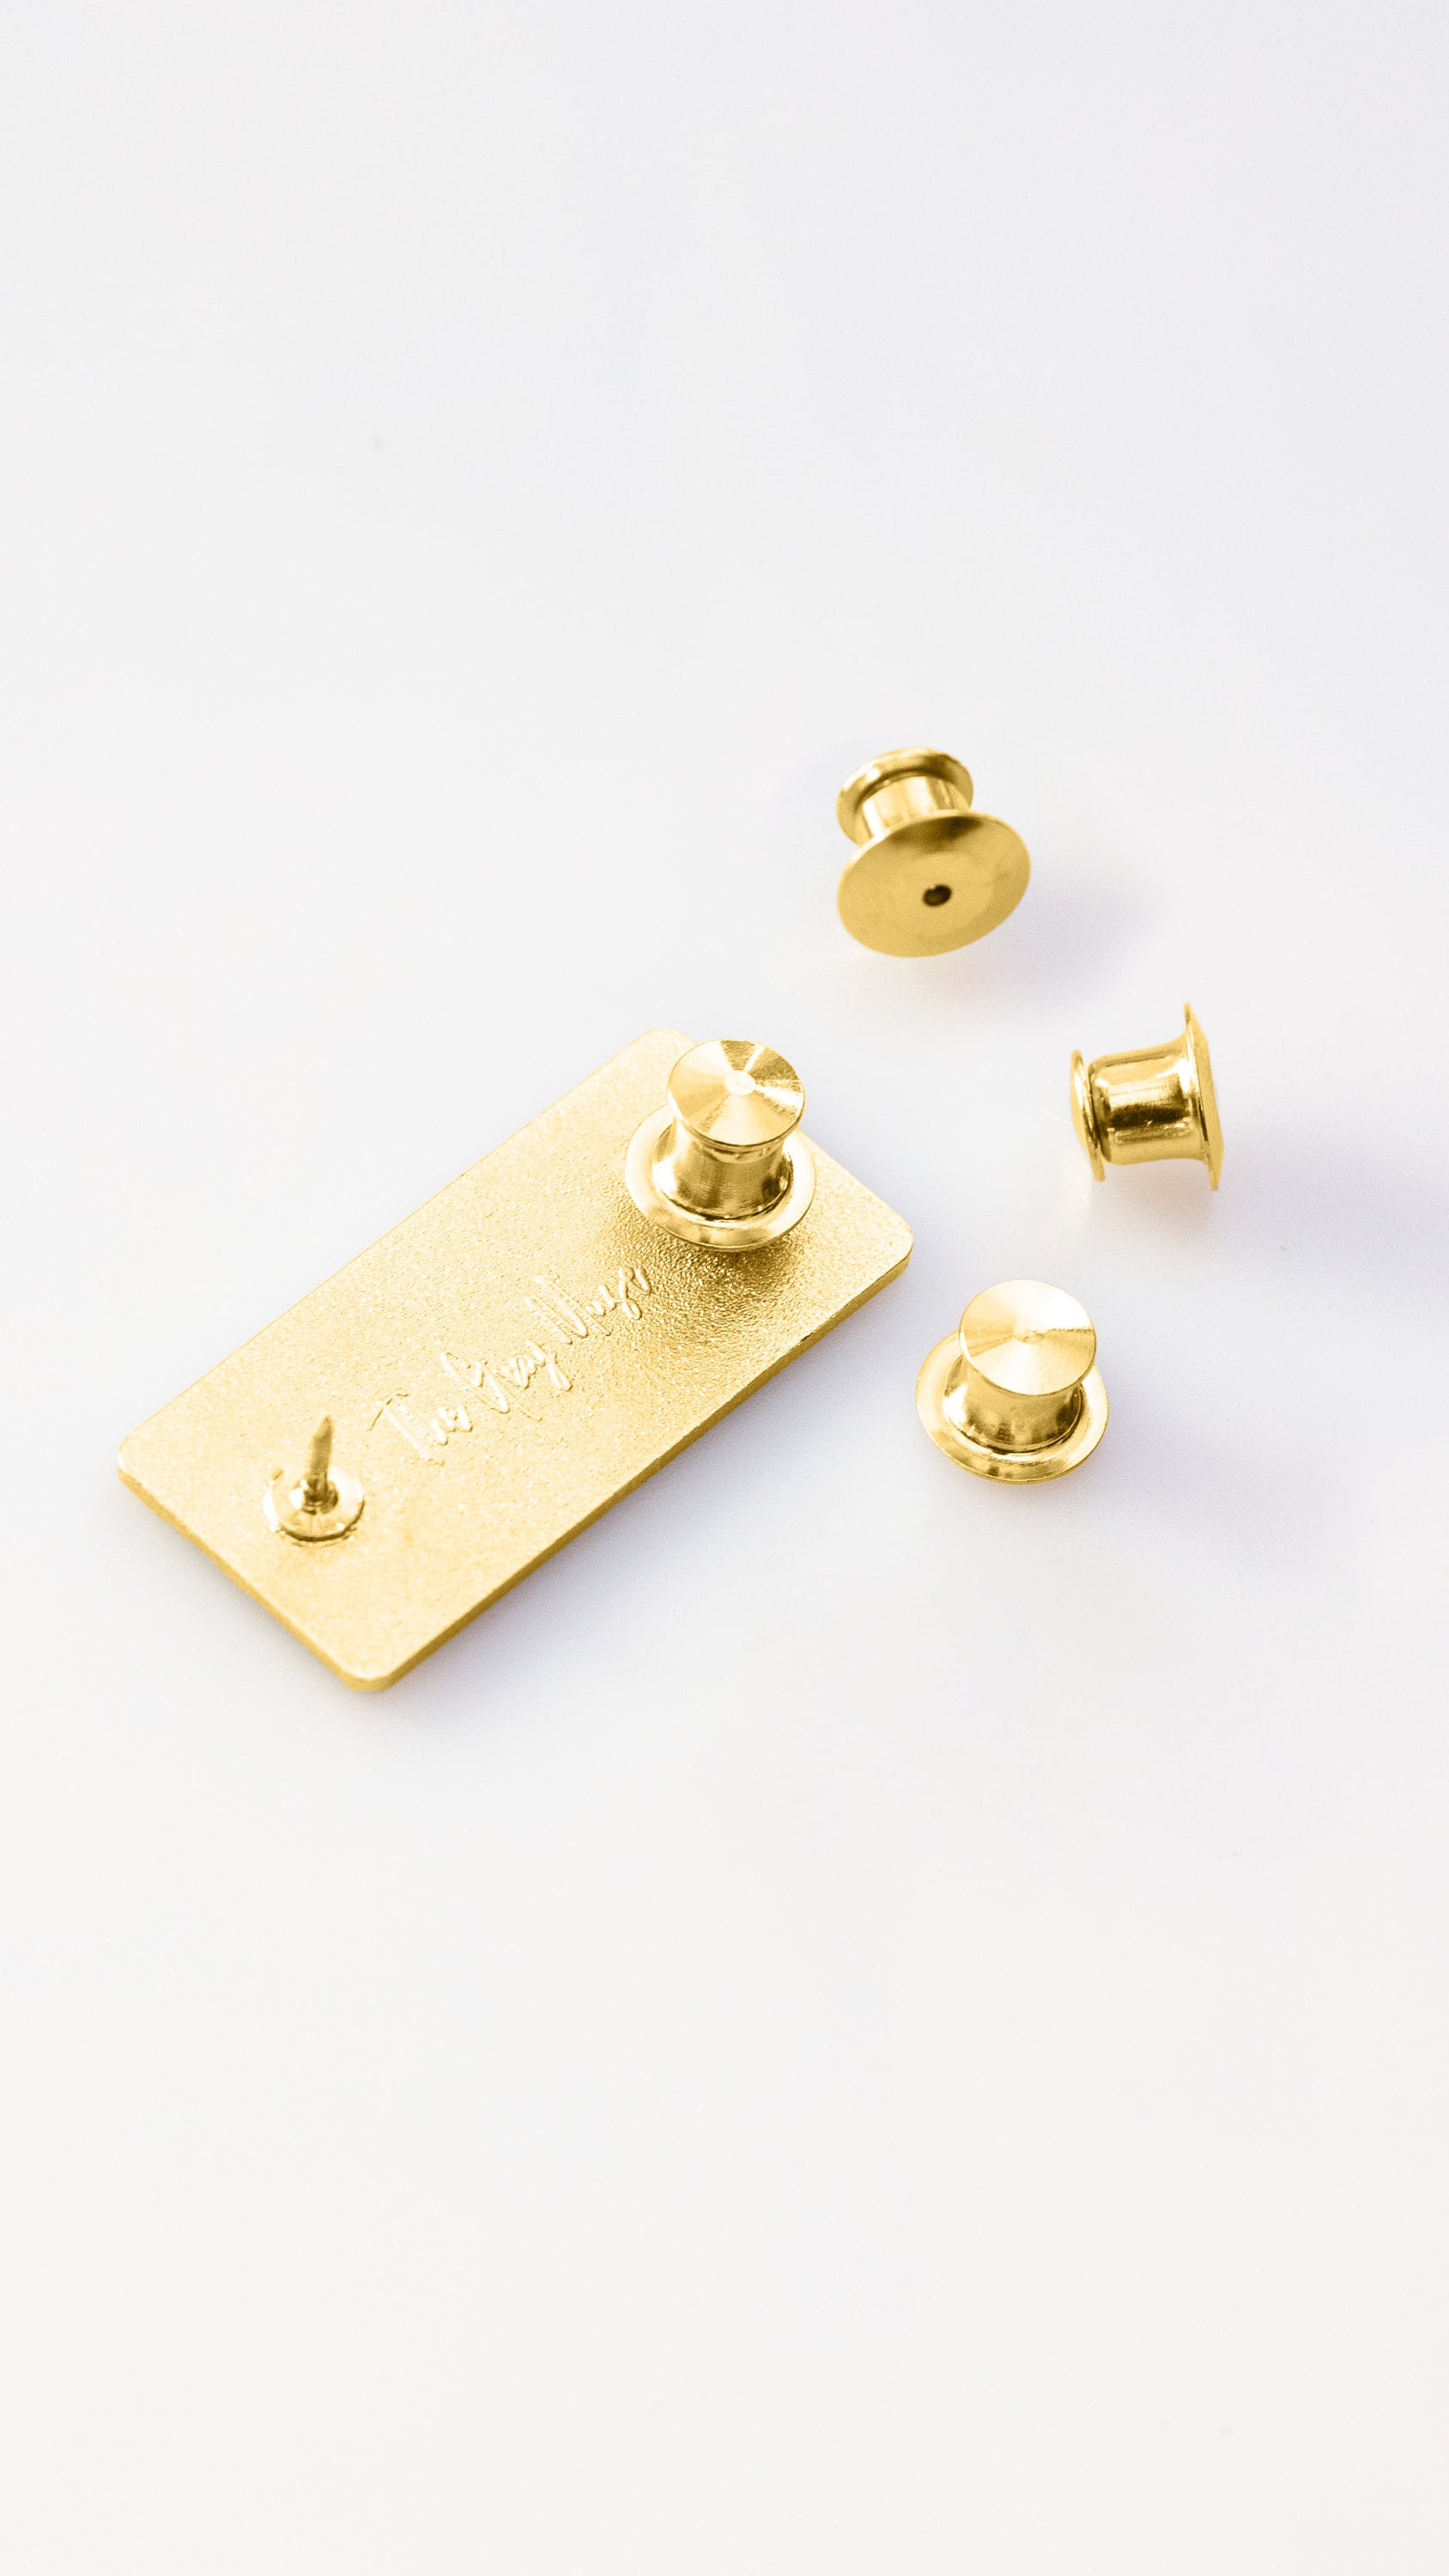 Deluxe Locking Enamel Pin Keepers — Pack of 5 — Locking Pin Backs